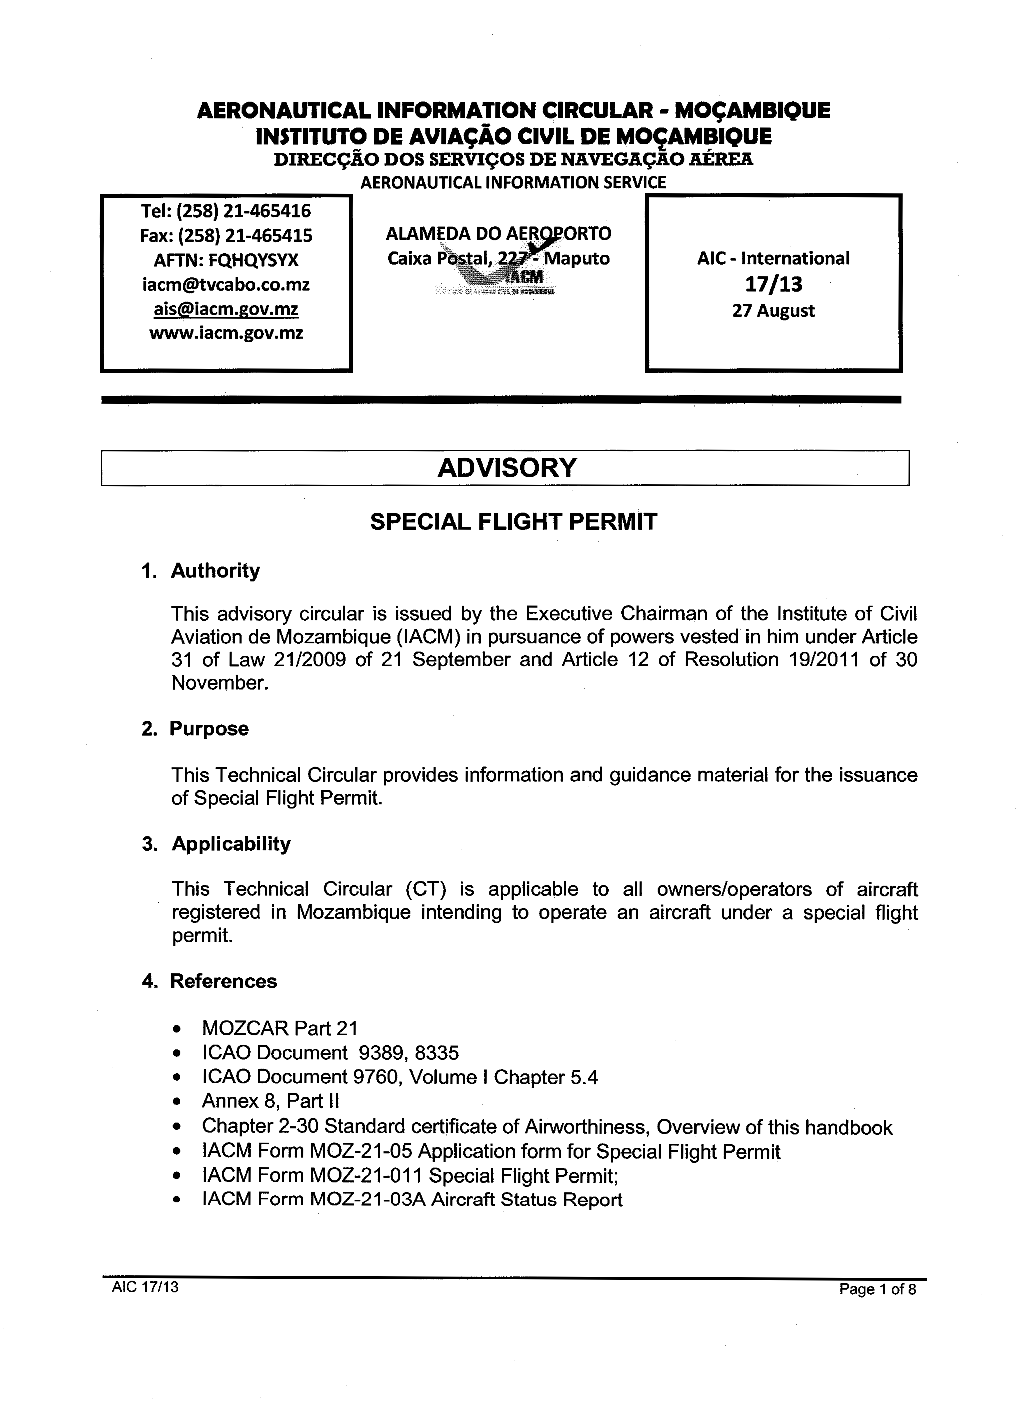 AIC 17-2013 Special Flight Permit